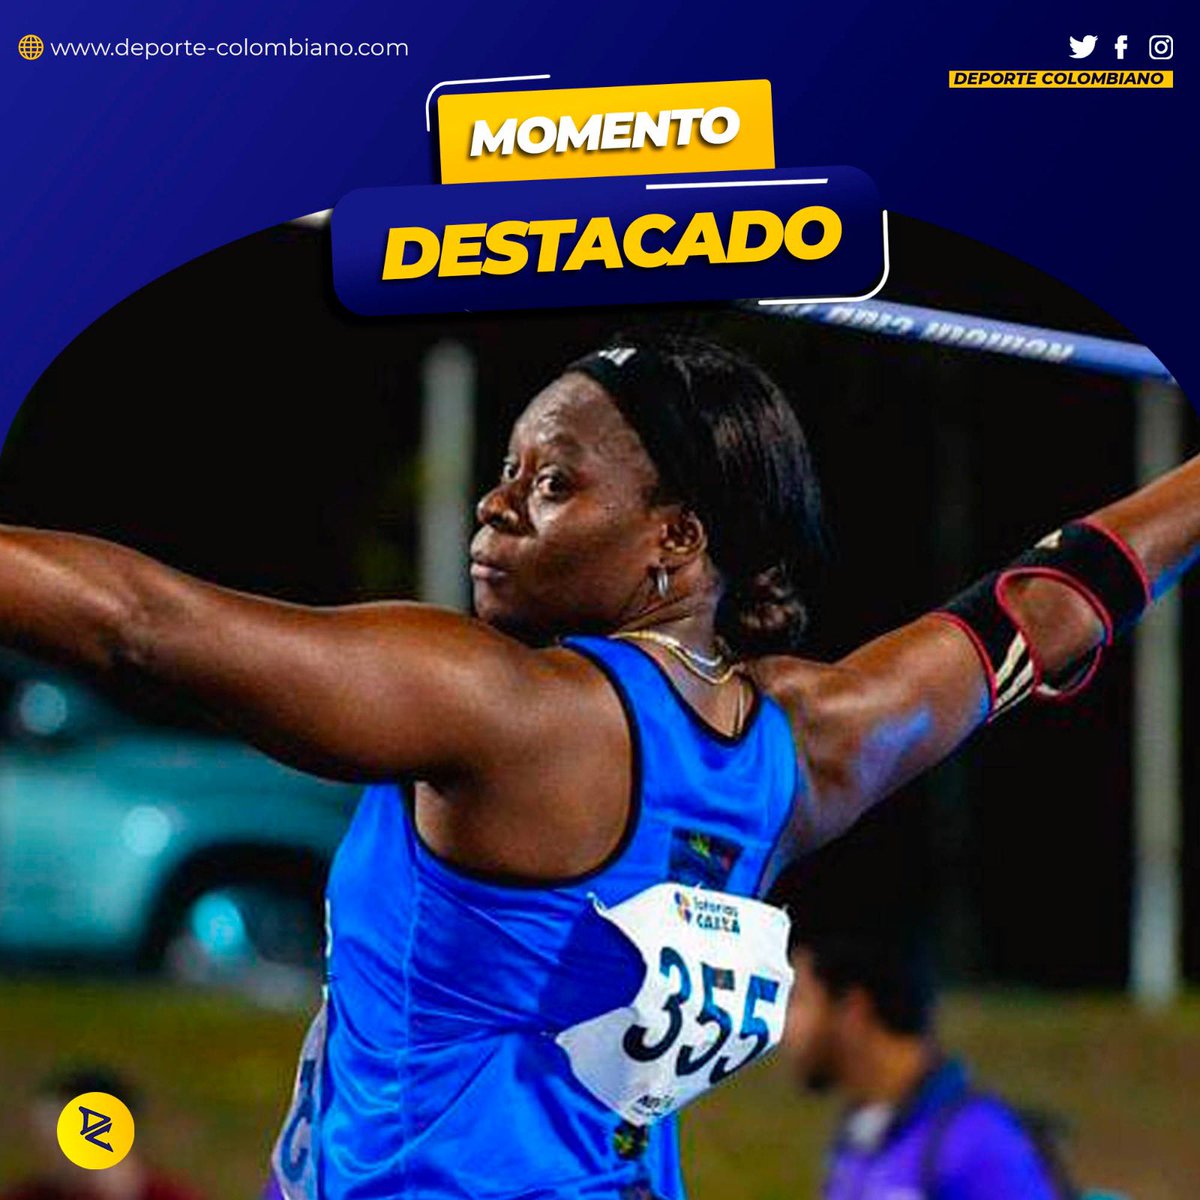 ¡EL MEJOR MOMENTO! Atletismo en el Iberoamericano 🏃‍♀️

La delegación subió al podio del Campeonato en 13 oportunidades y fue elegida por ustedes como el momento de la semana.

Se resaltó la actuación de Flor Ruiz, con nuevo récord sudamericano y liderato del ranking internacional.